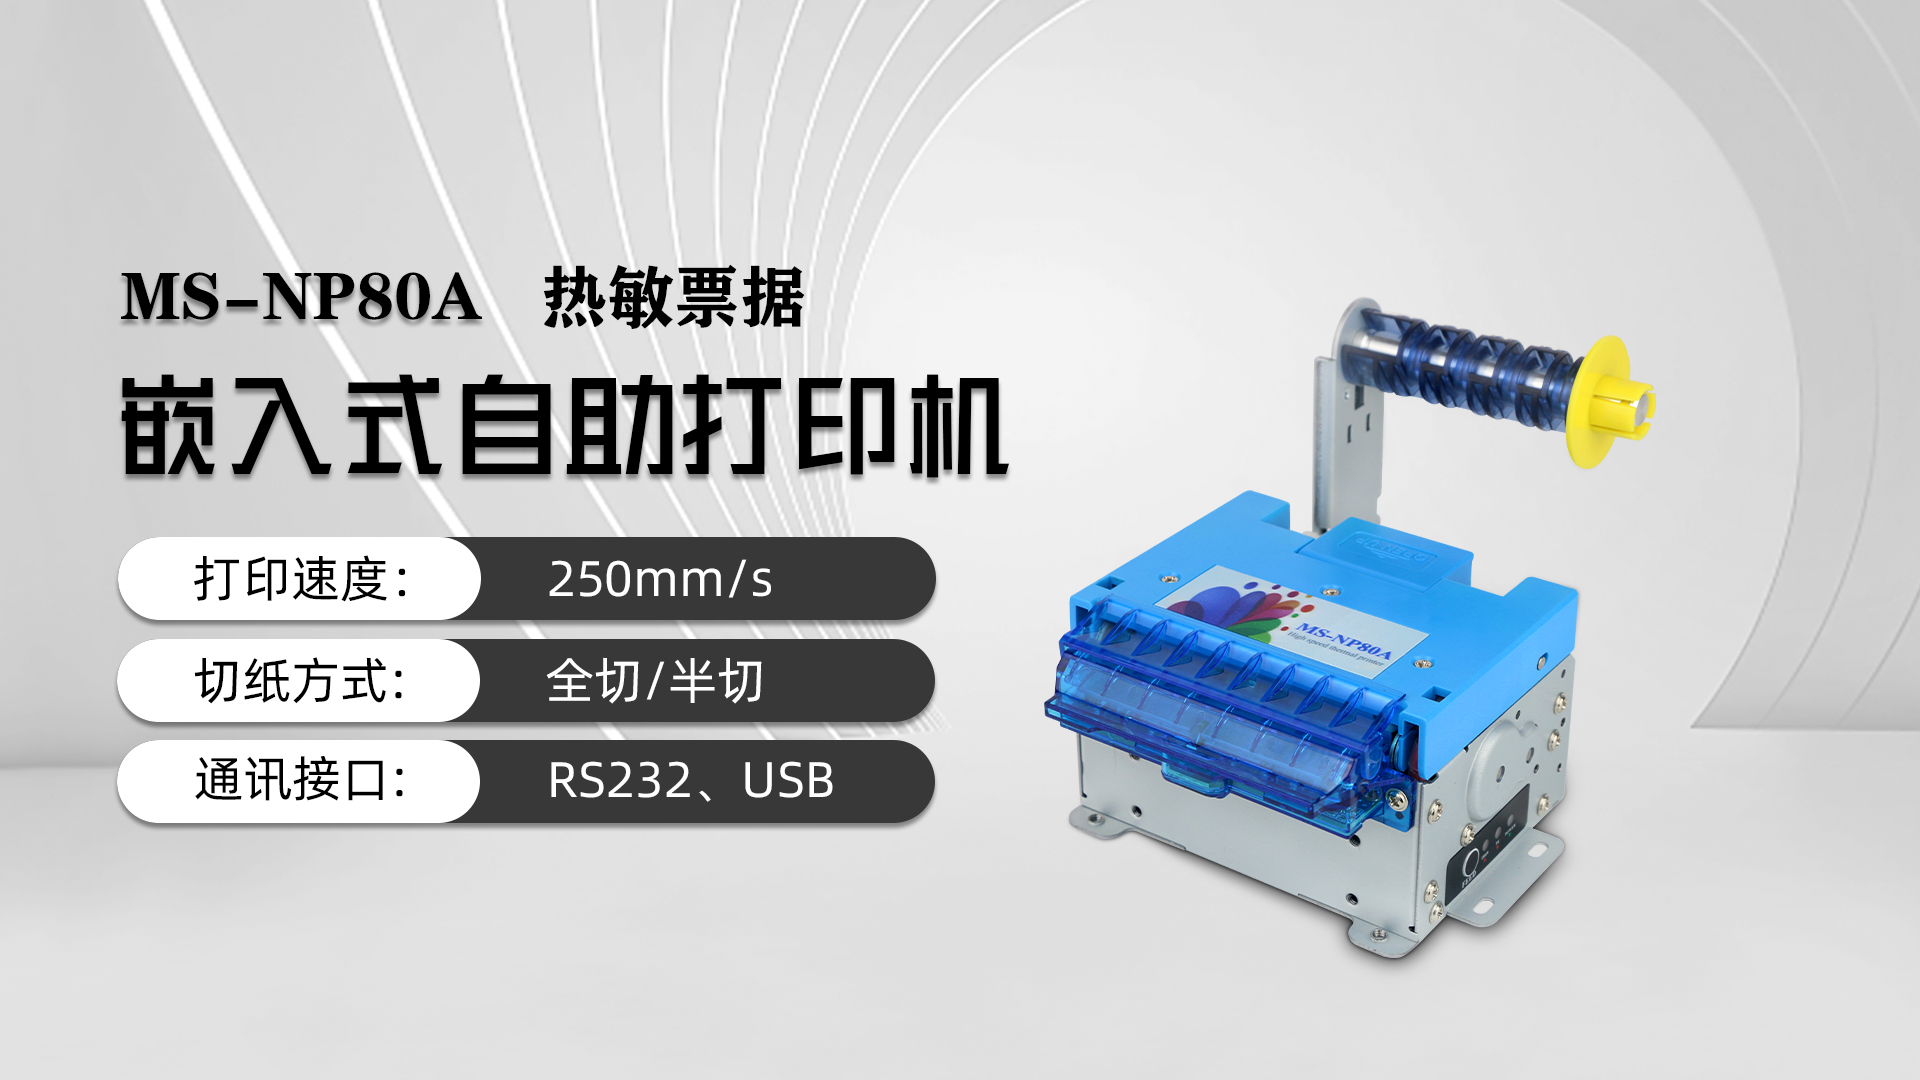 美松打印机NP80A为京东总部自助访客机提供解决方案